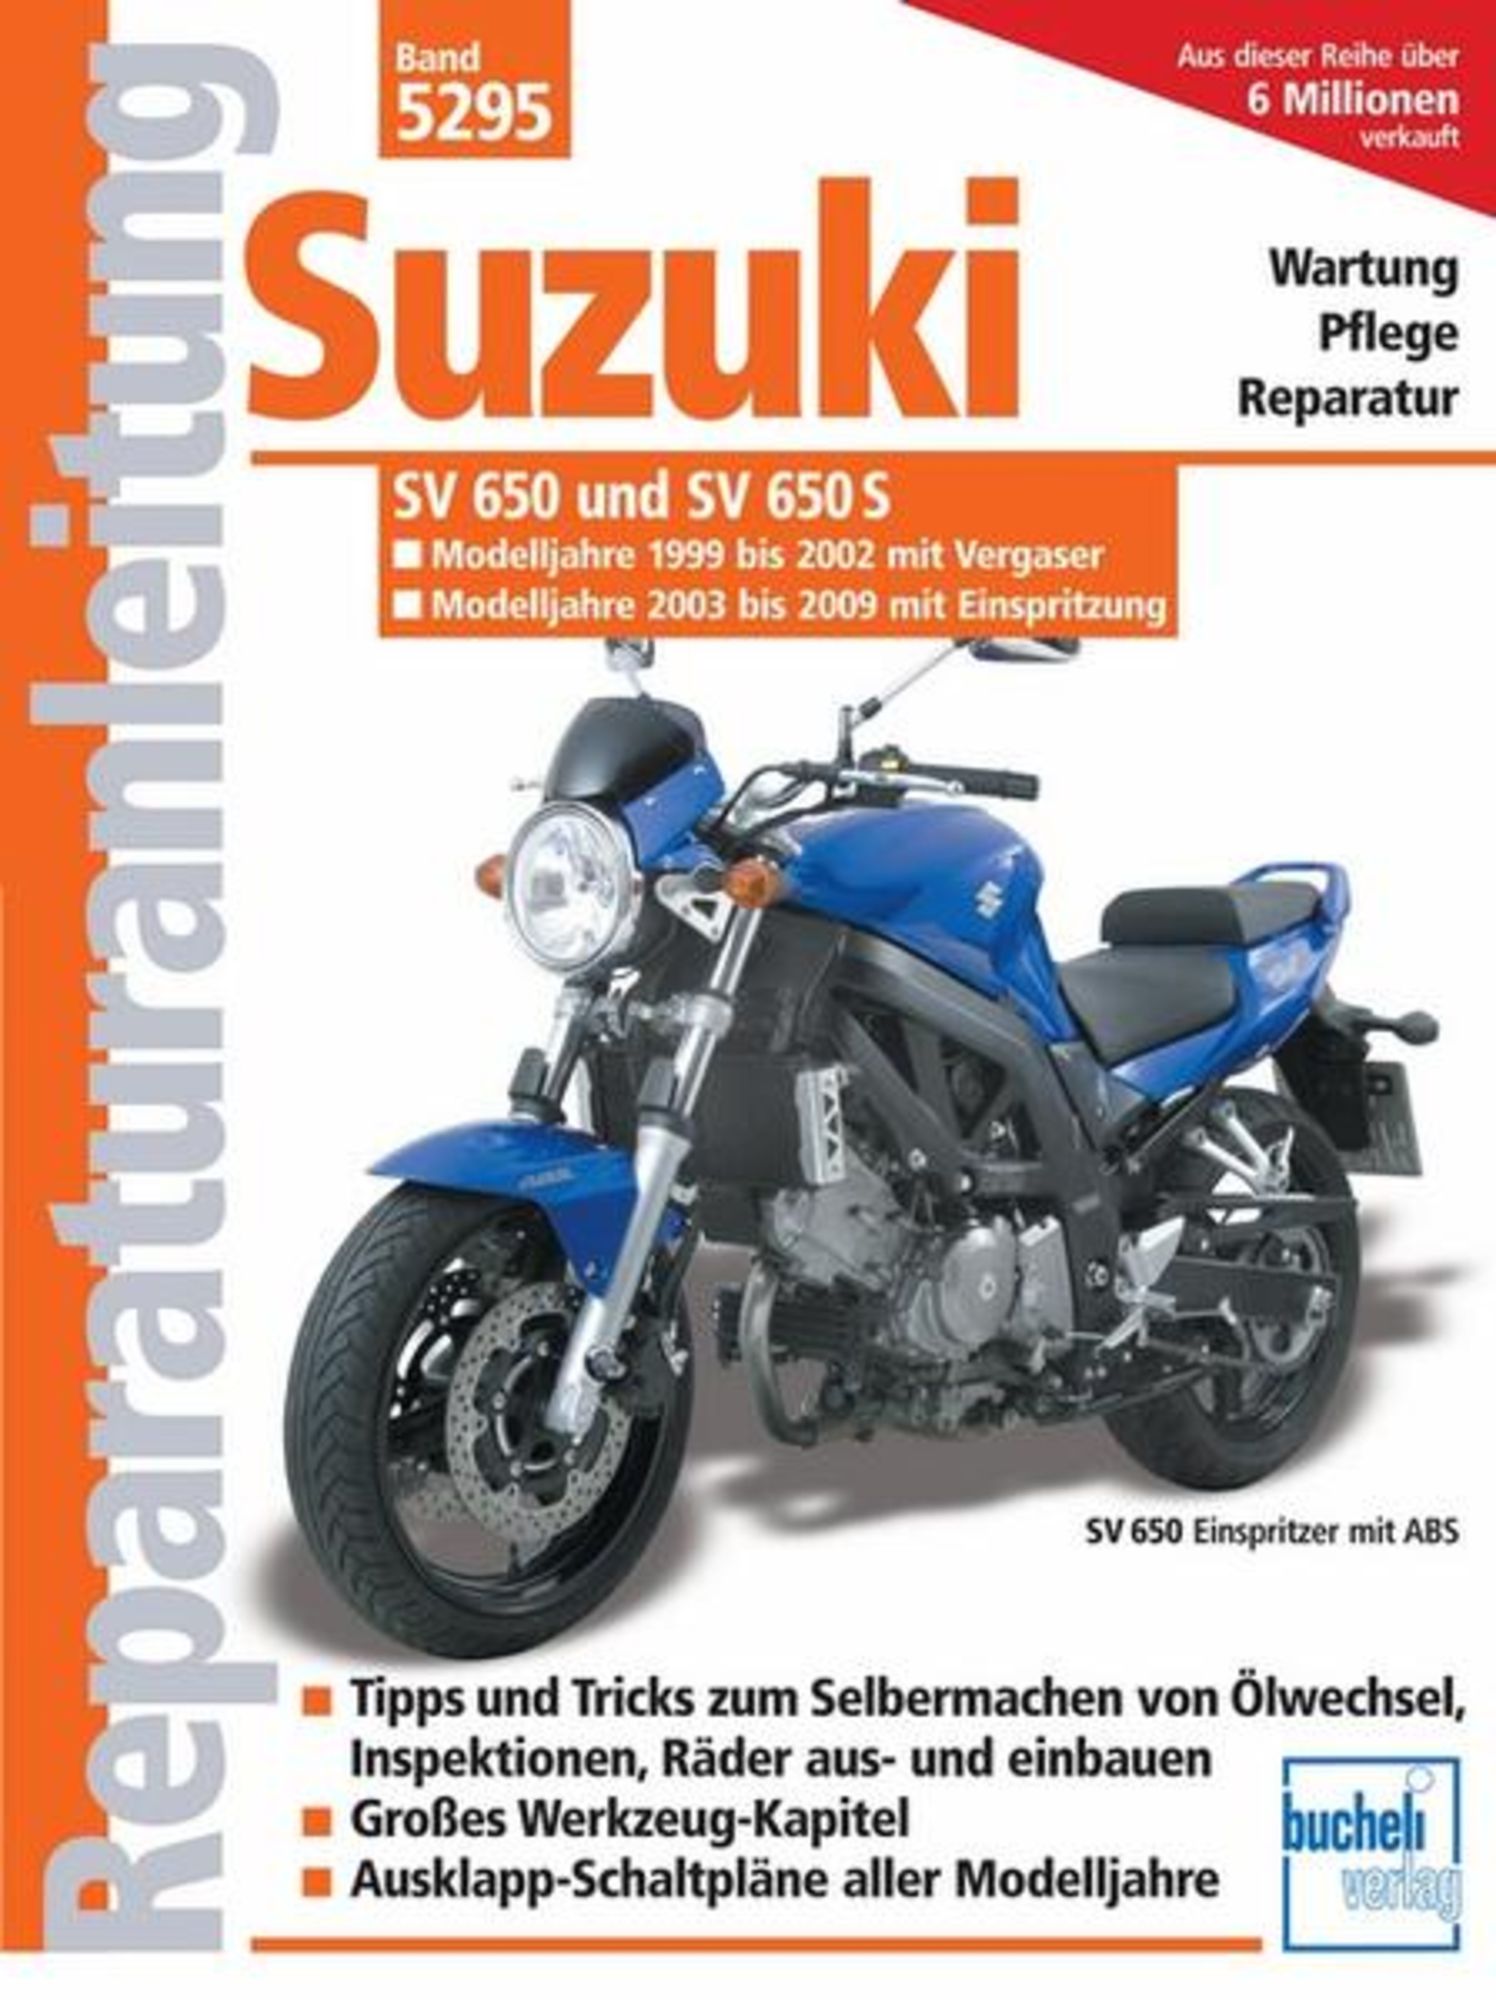 Suzuki SV 650/SV 650 S /Vergaser u. Einspritzung/ Modelljahr 1999-2008' von  'F. J. Schermer' - Buch - '978-3-7168-2142-8